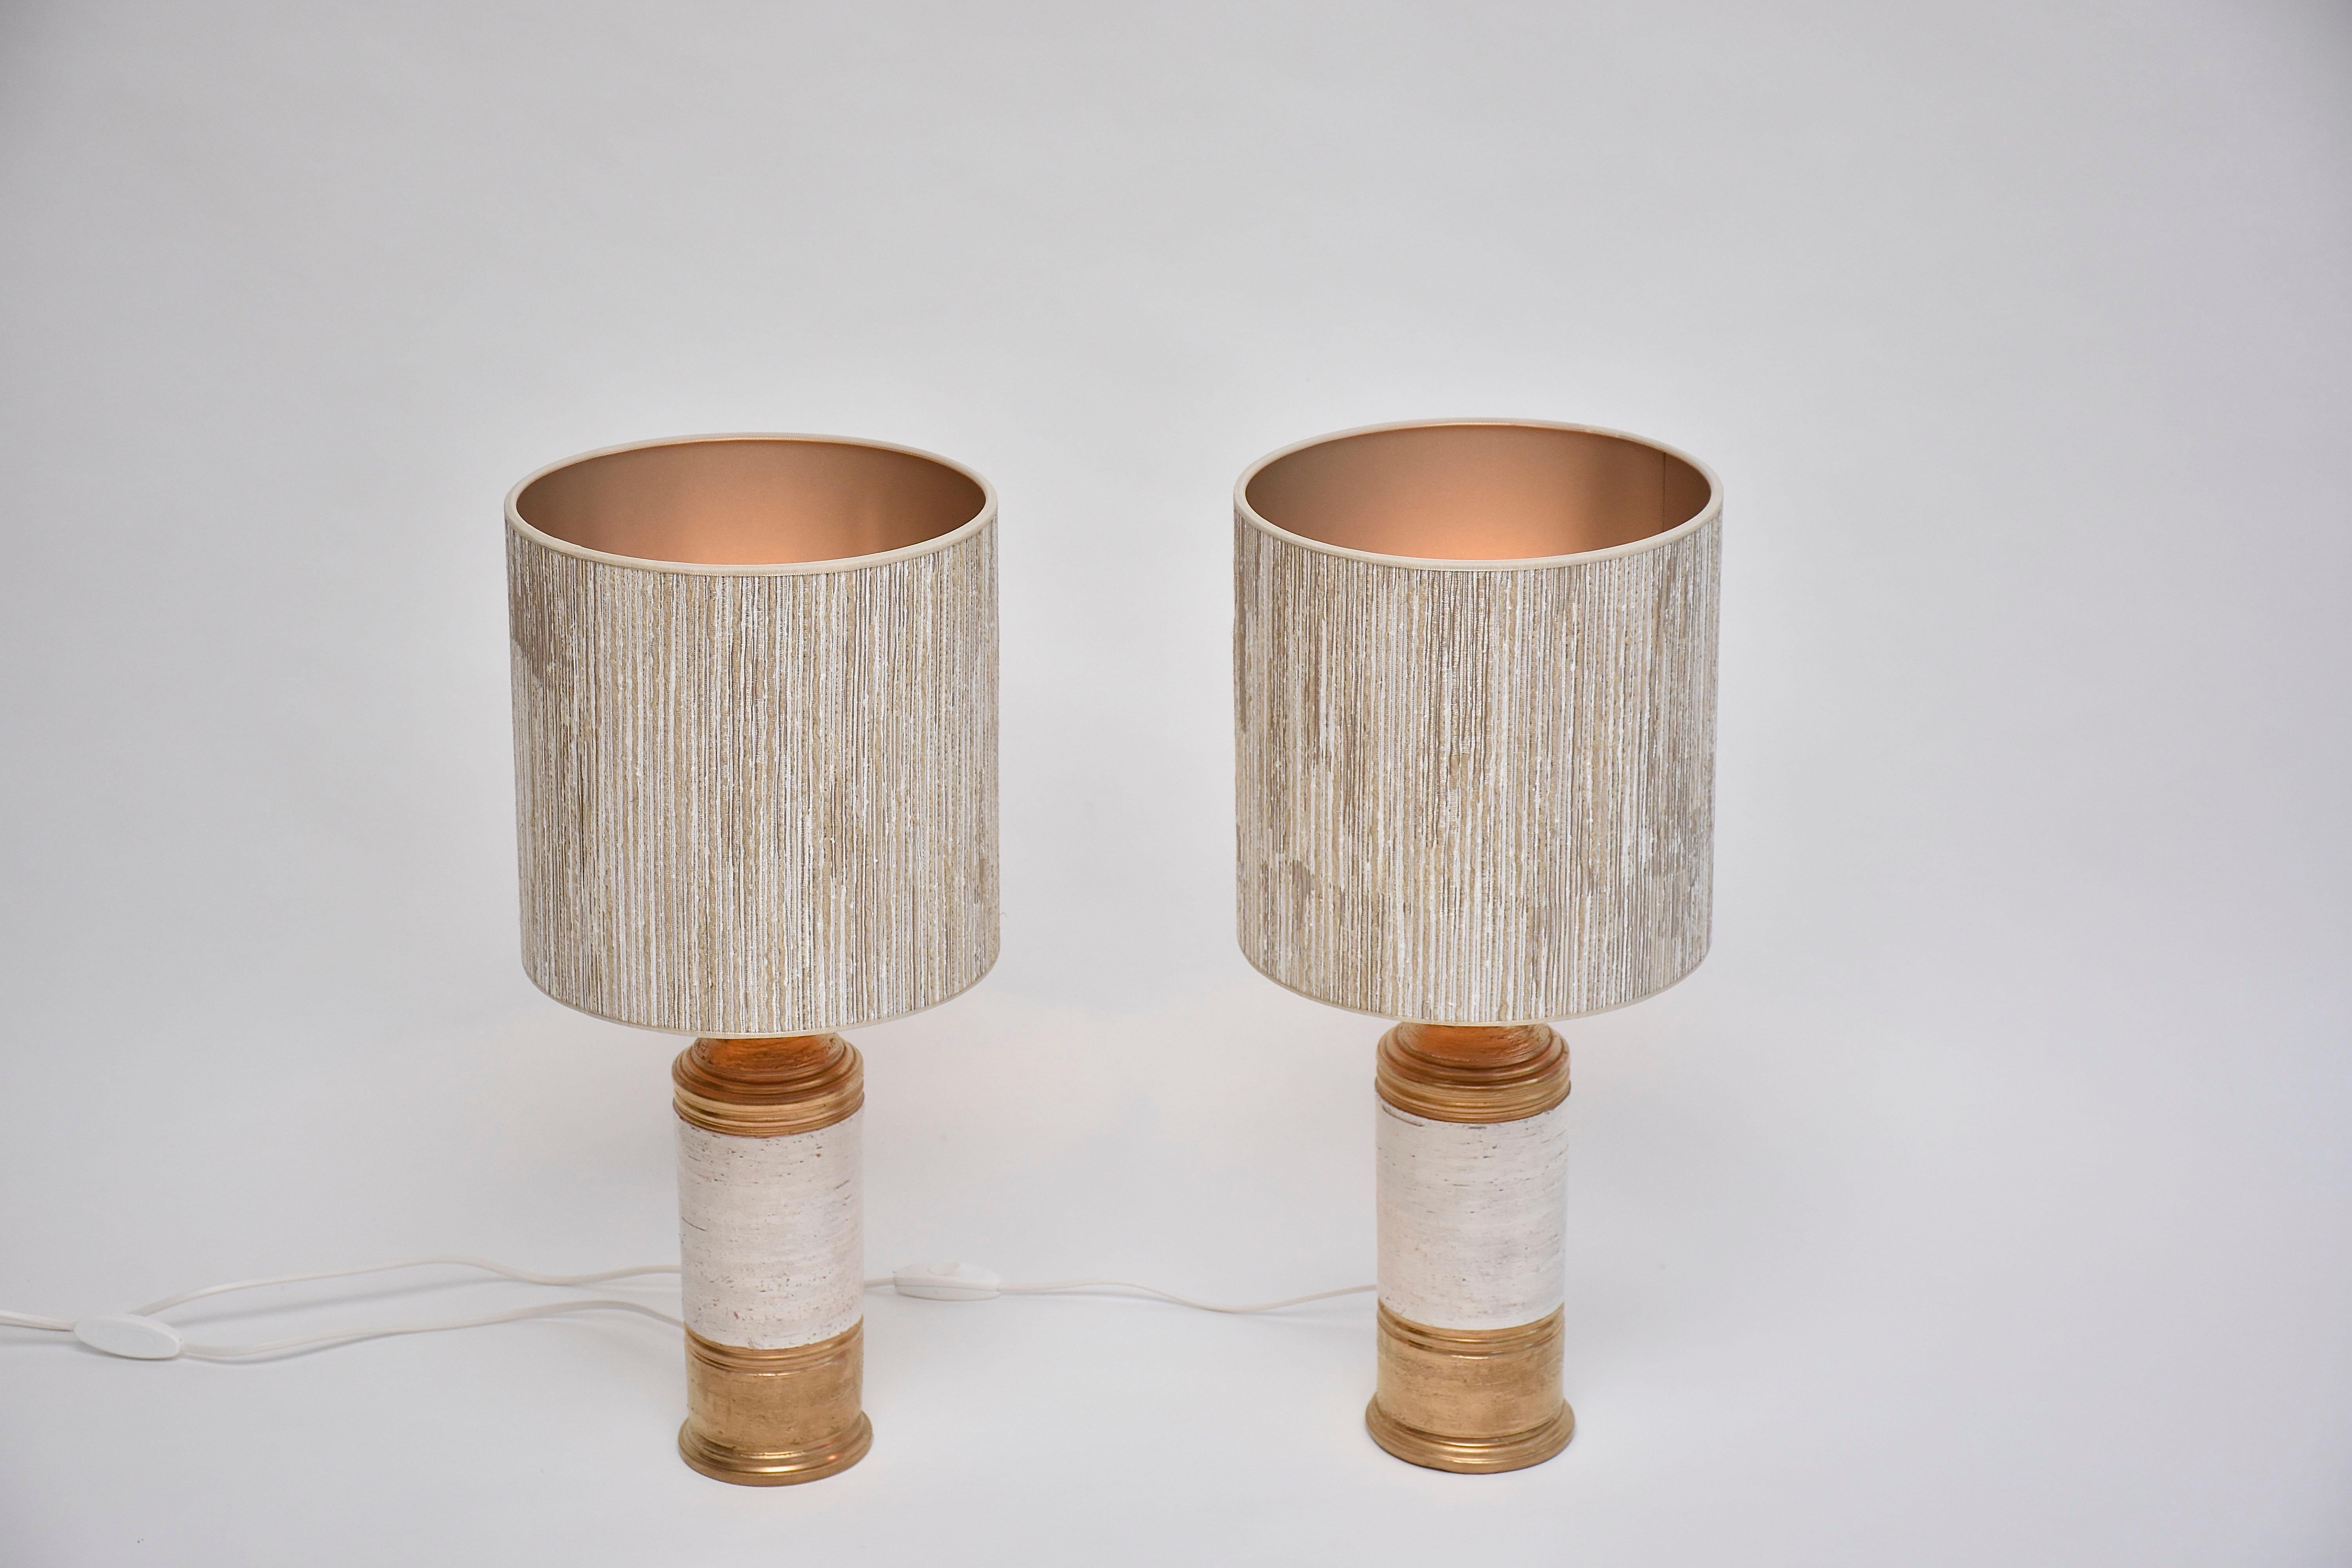 Magnifique paire de lampes de table en céramique conçue par Bitossi pour Bergboms- Suède.
Ces jolies lampes ont une base et un dessus émaillés or avec au centre une texture 